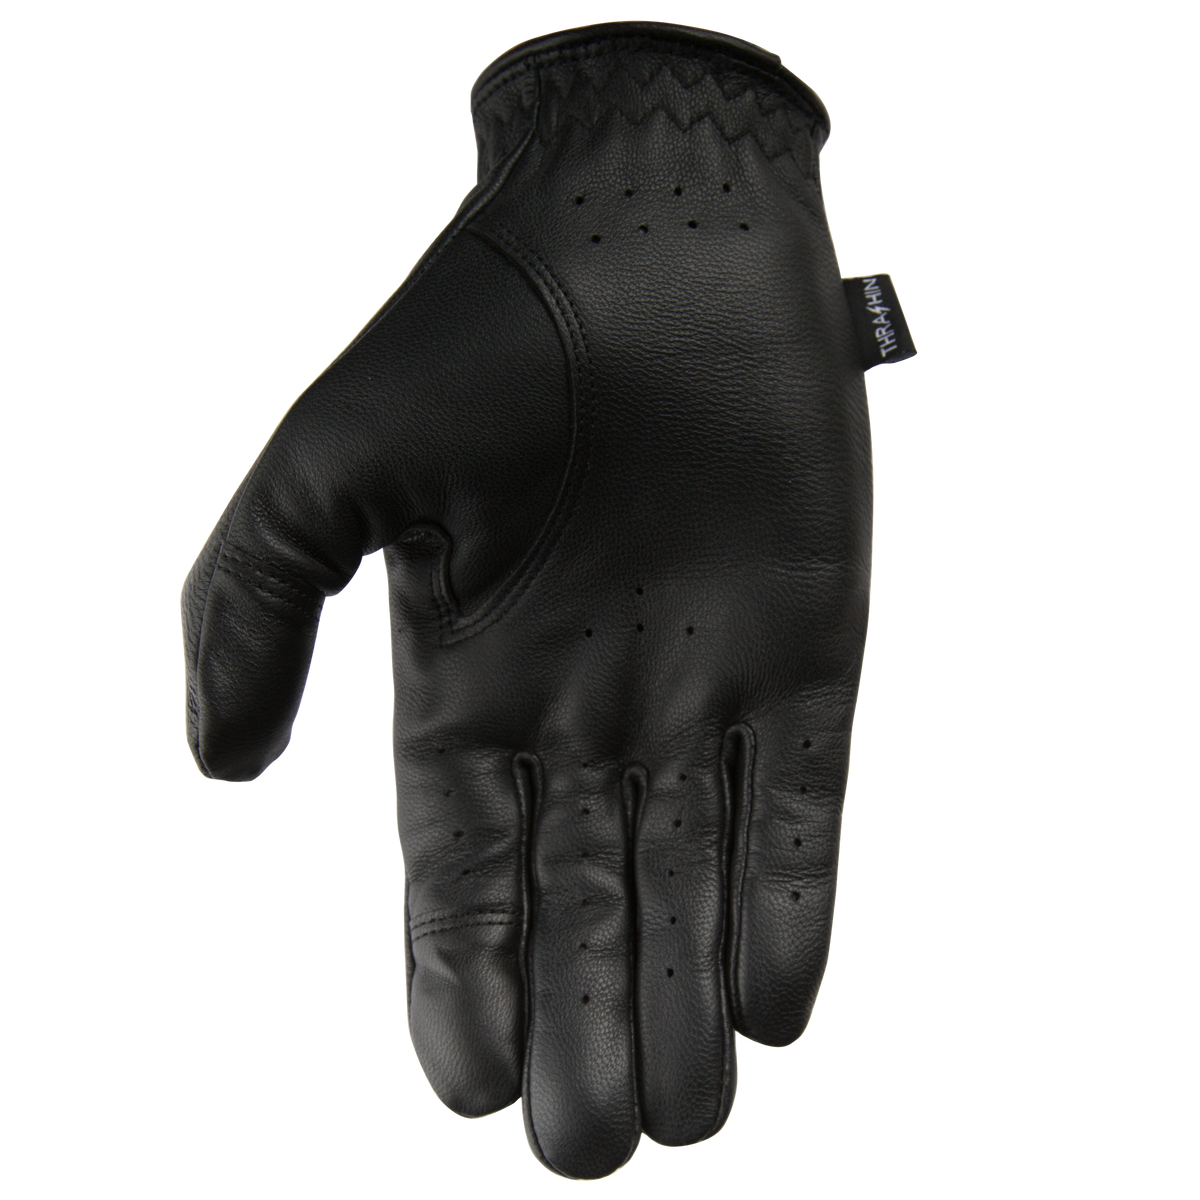 Thrashin Supply Siege Glove - Black